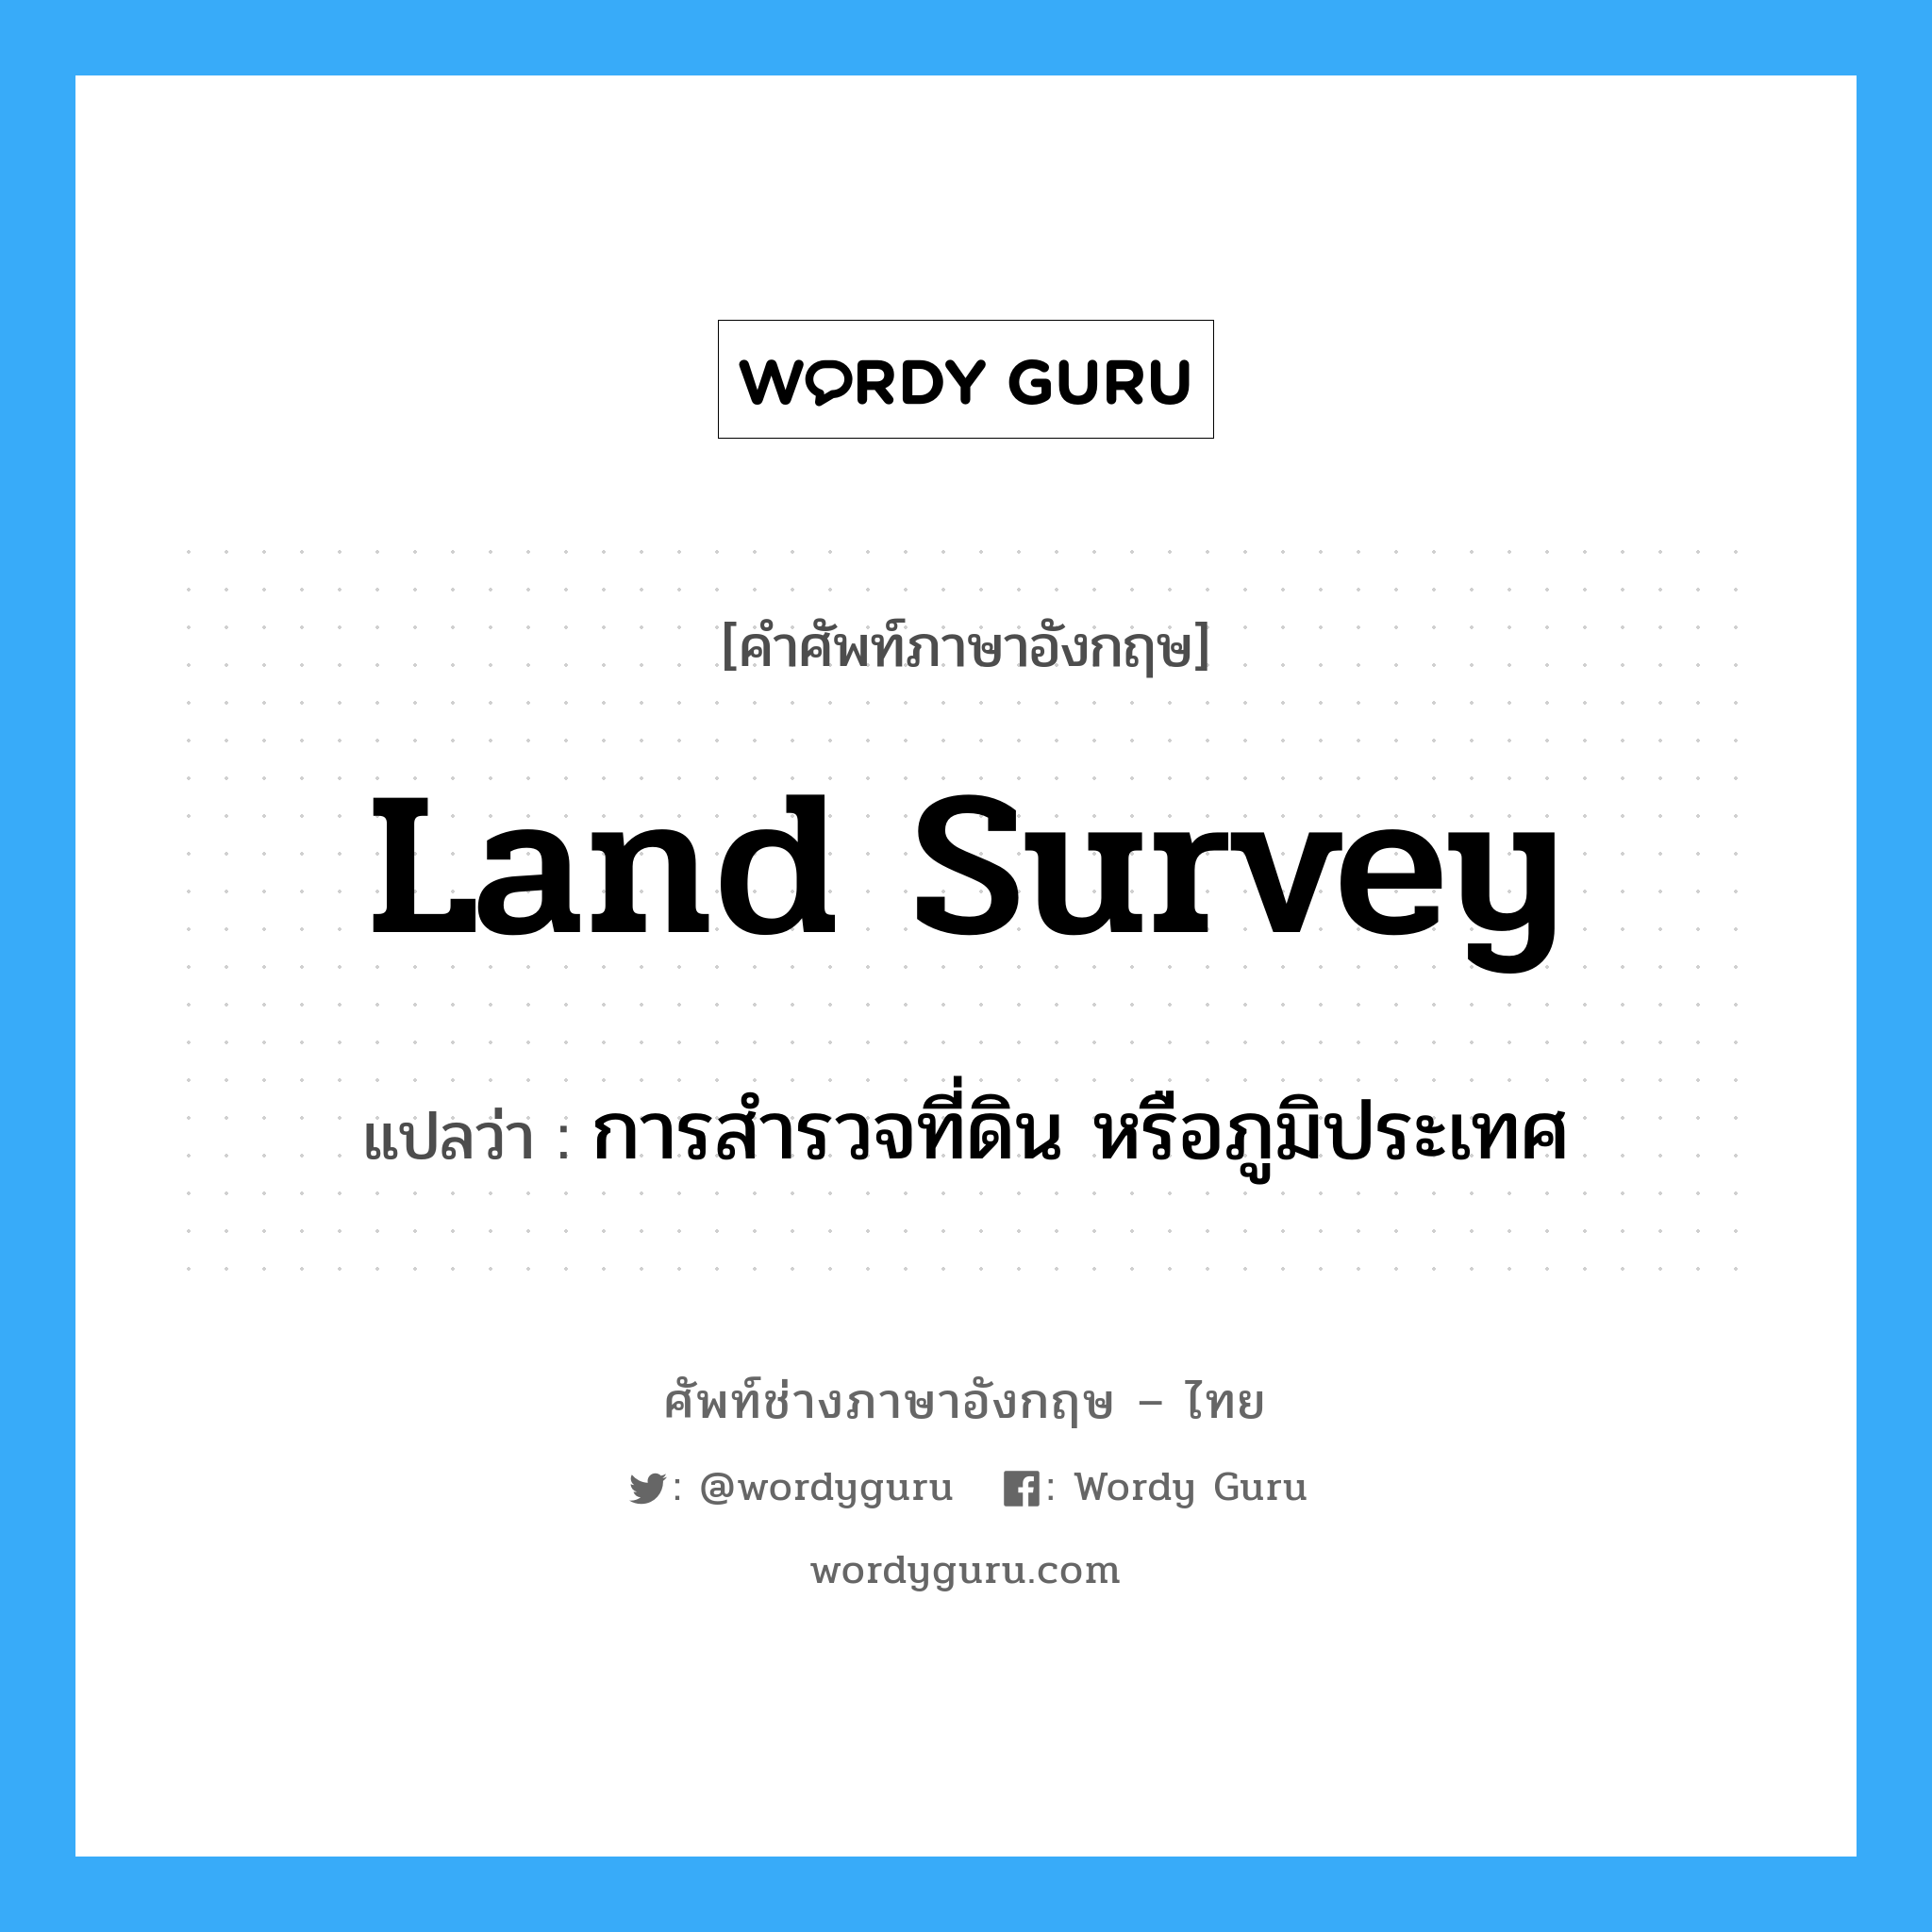 การสำรวจที่ดิน หรือภูมิประเทศ ภาษาอังกฤษ?, คำศัพท์ช่างภาษาอังกฤษ - ไทย การสำรวจที่ดิน หรือภูมิประเทศ คำศัพท์ภาษาอังกฤษ การสำรวจที่ดิน หรือภูมิประเทศ แปลว่า land survey